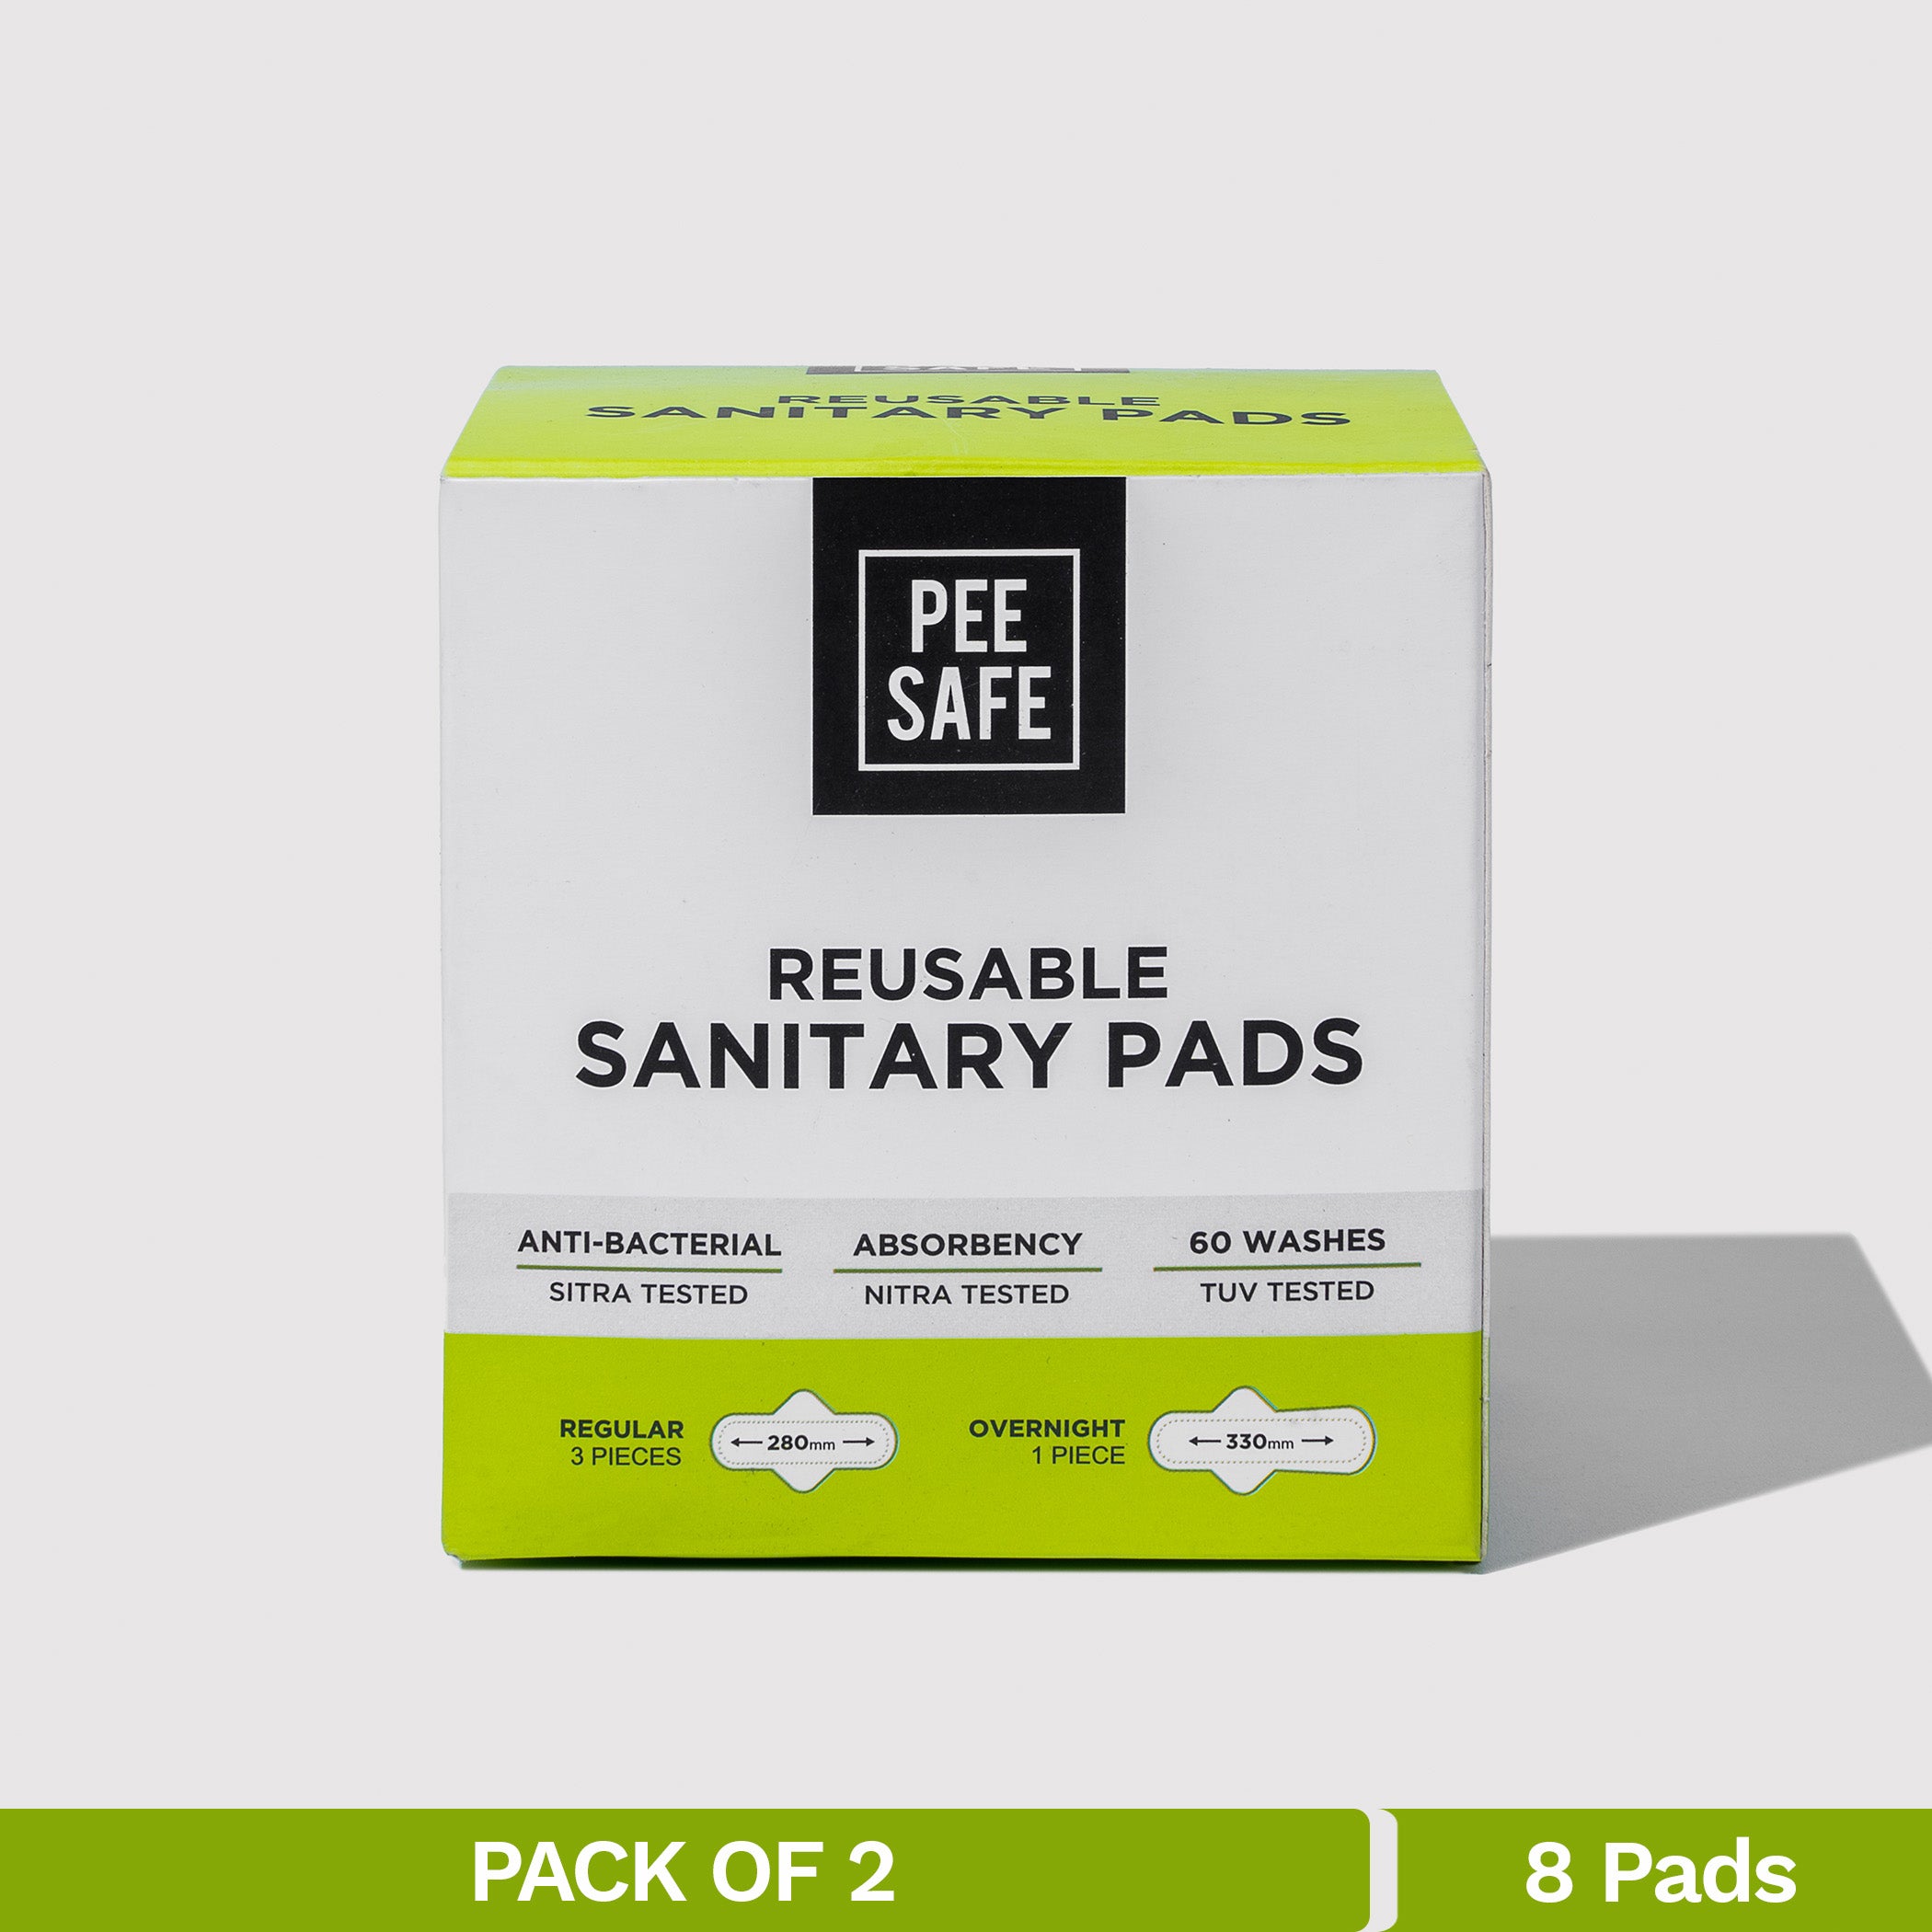 Pee Safe Reusable Sanitary Pads (6 Regular Pads + 2 Night Pads) - Pack of 2